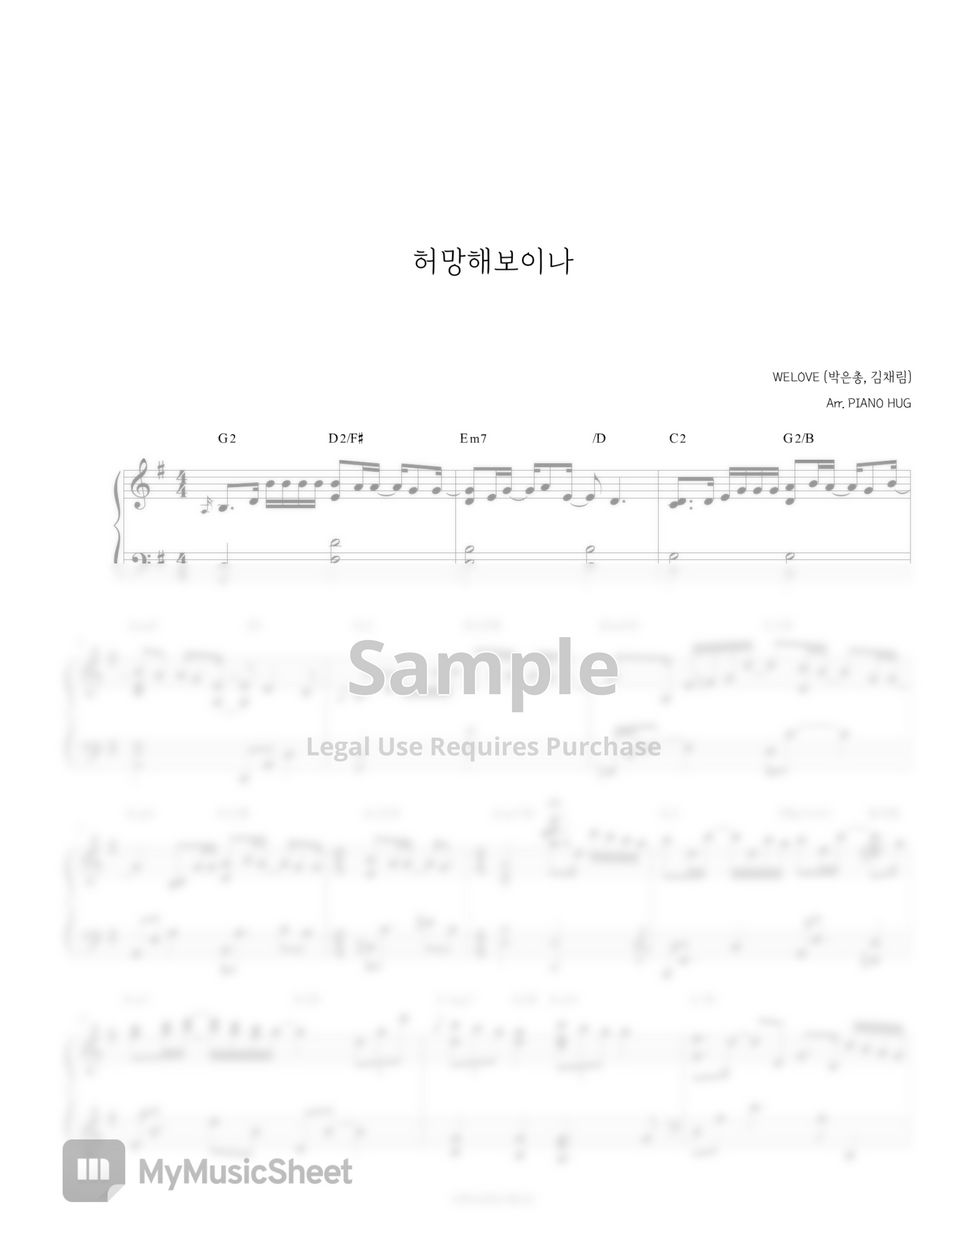 WELOVE (박은총, 김채림) - 허망해보이나 by Piano Hug